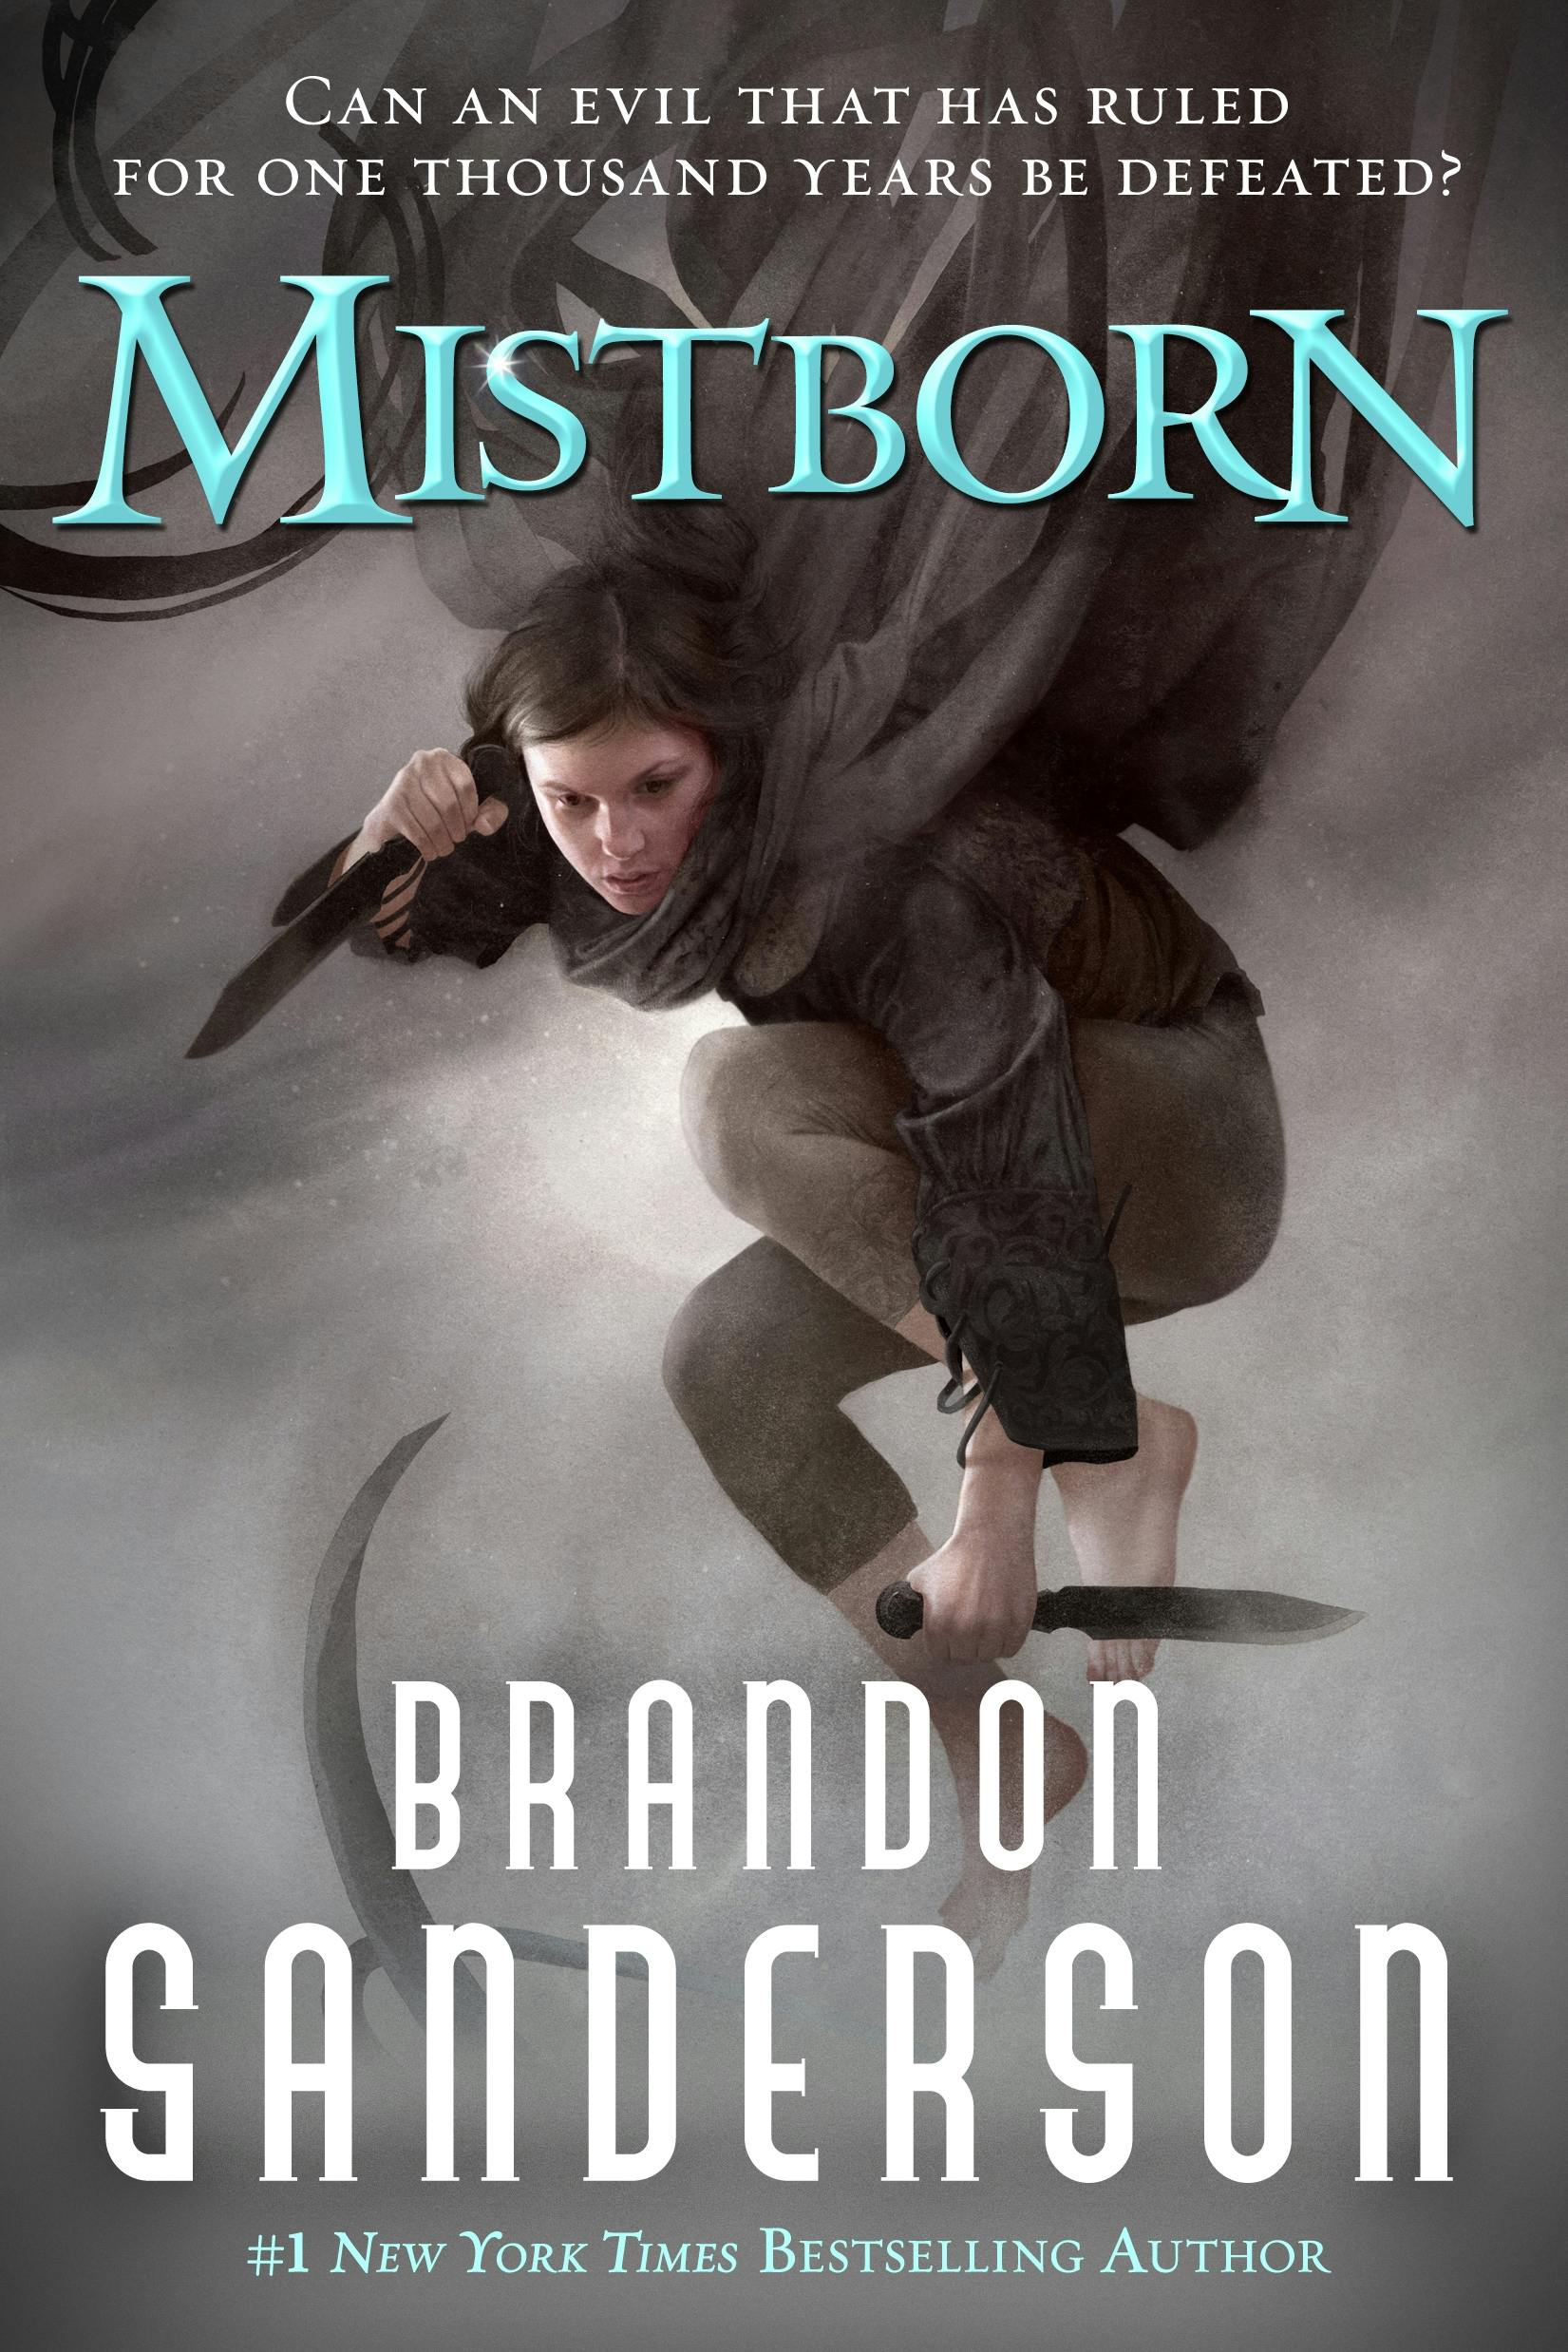 Best & Worst Brandon Sanderson's Books